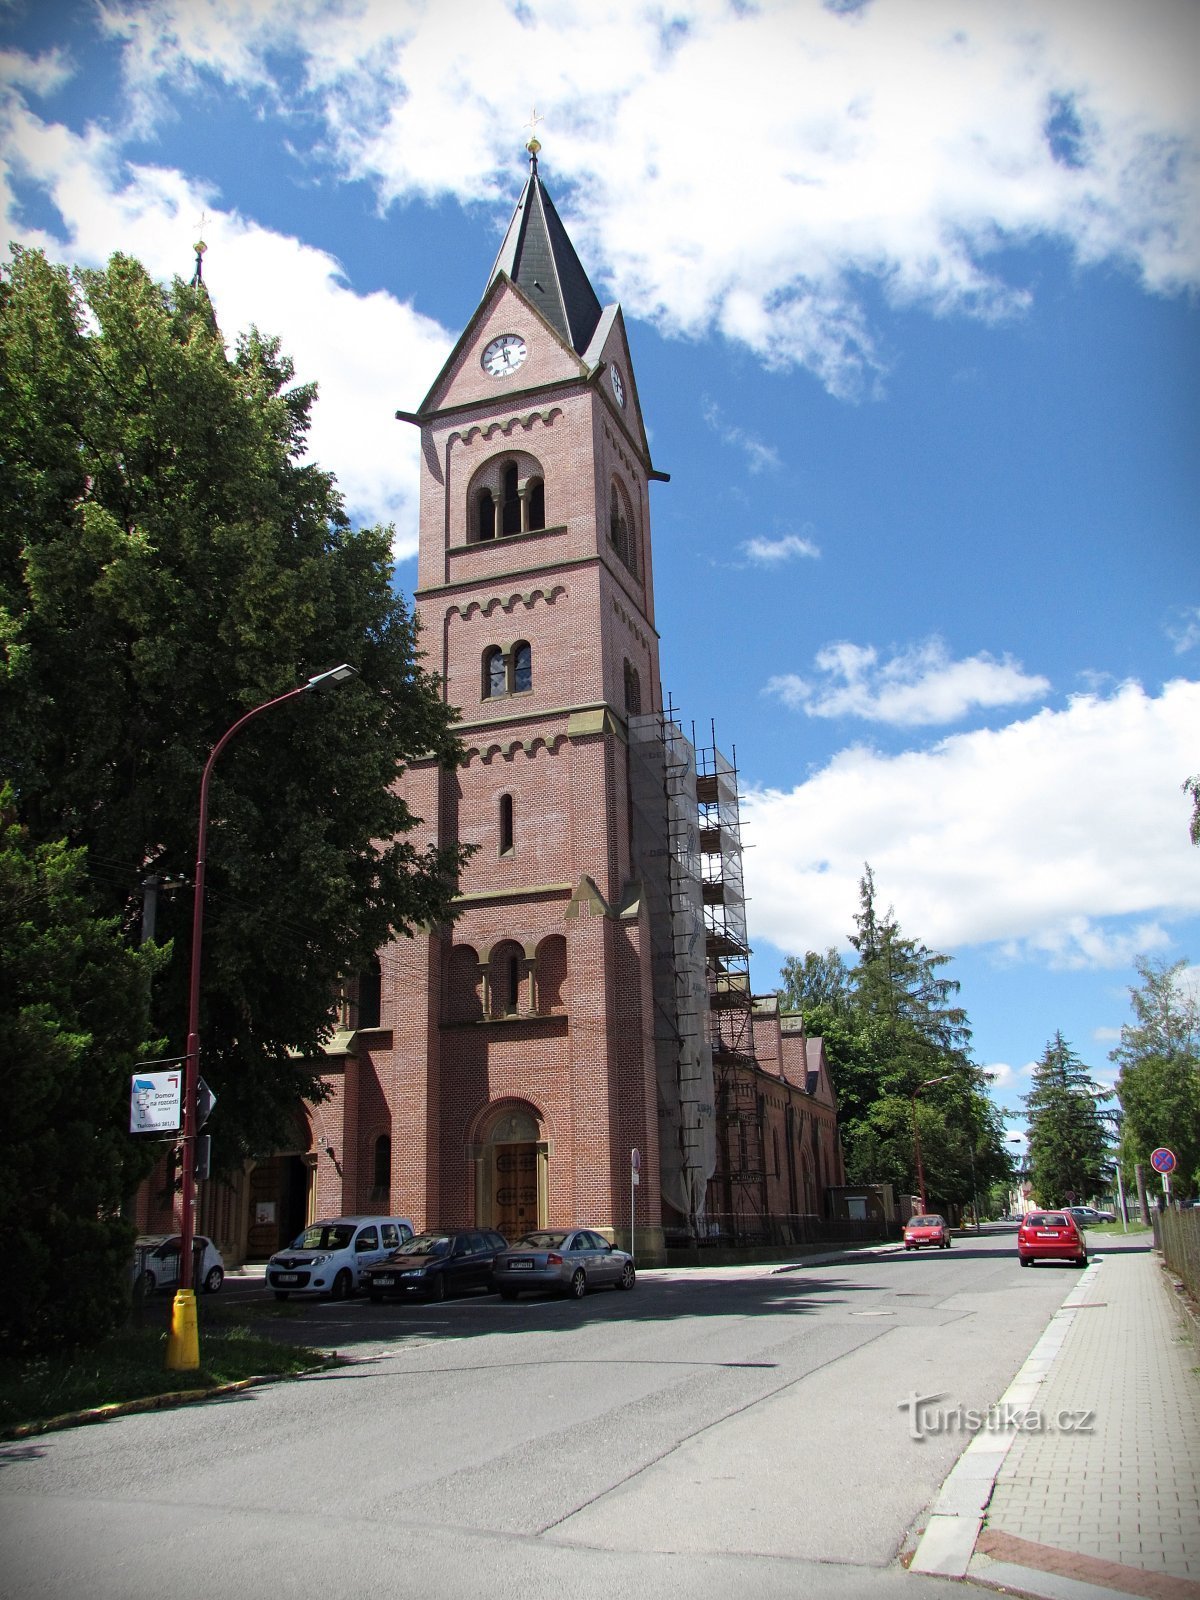 Свитавская церковь св. Иосифа